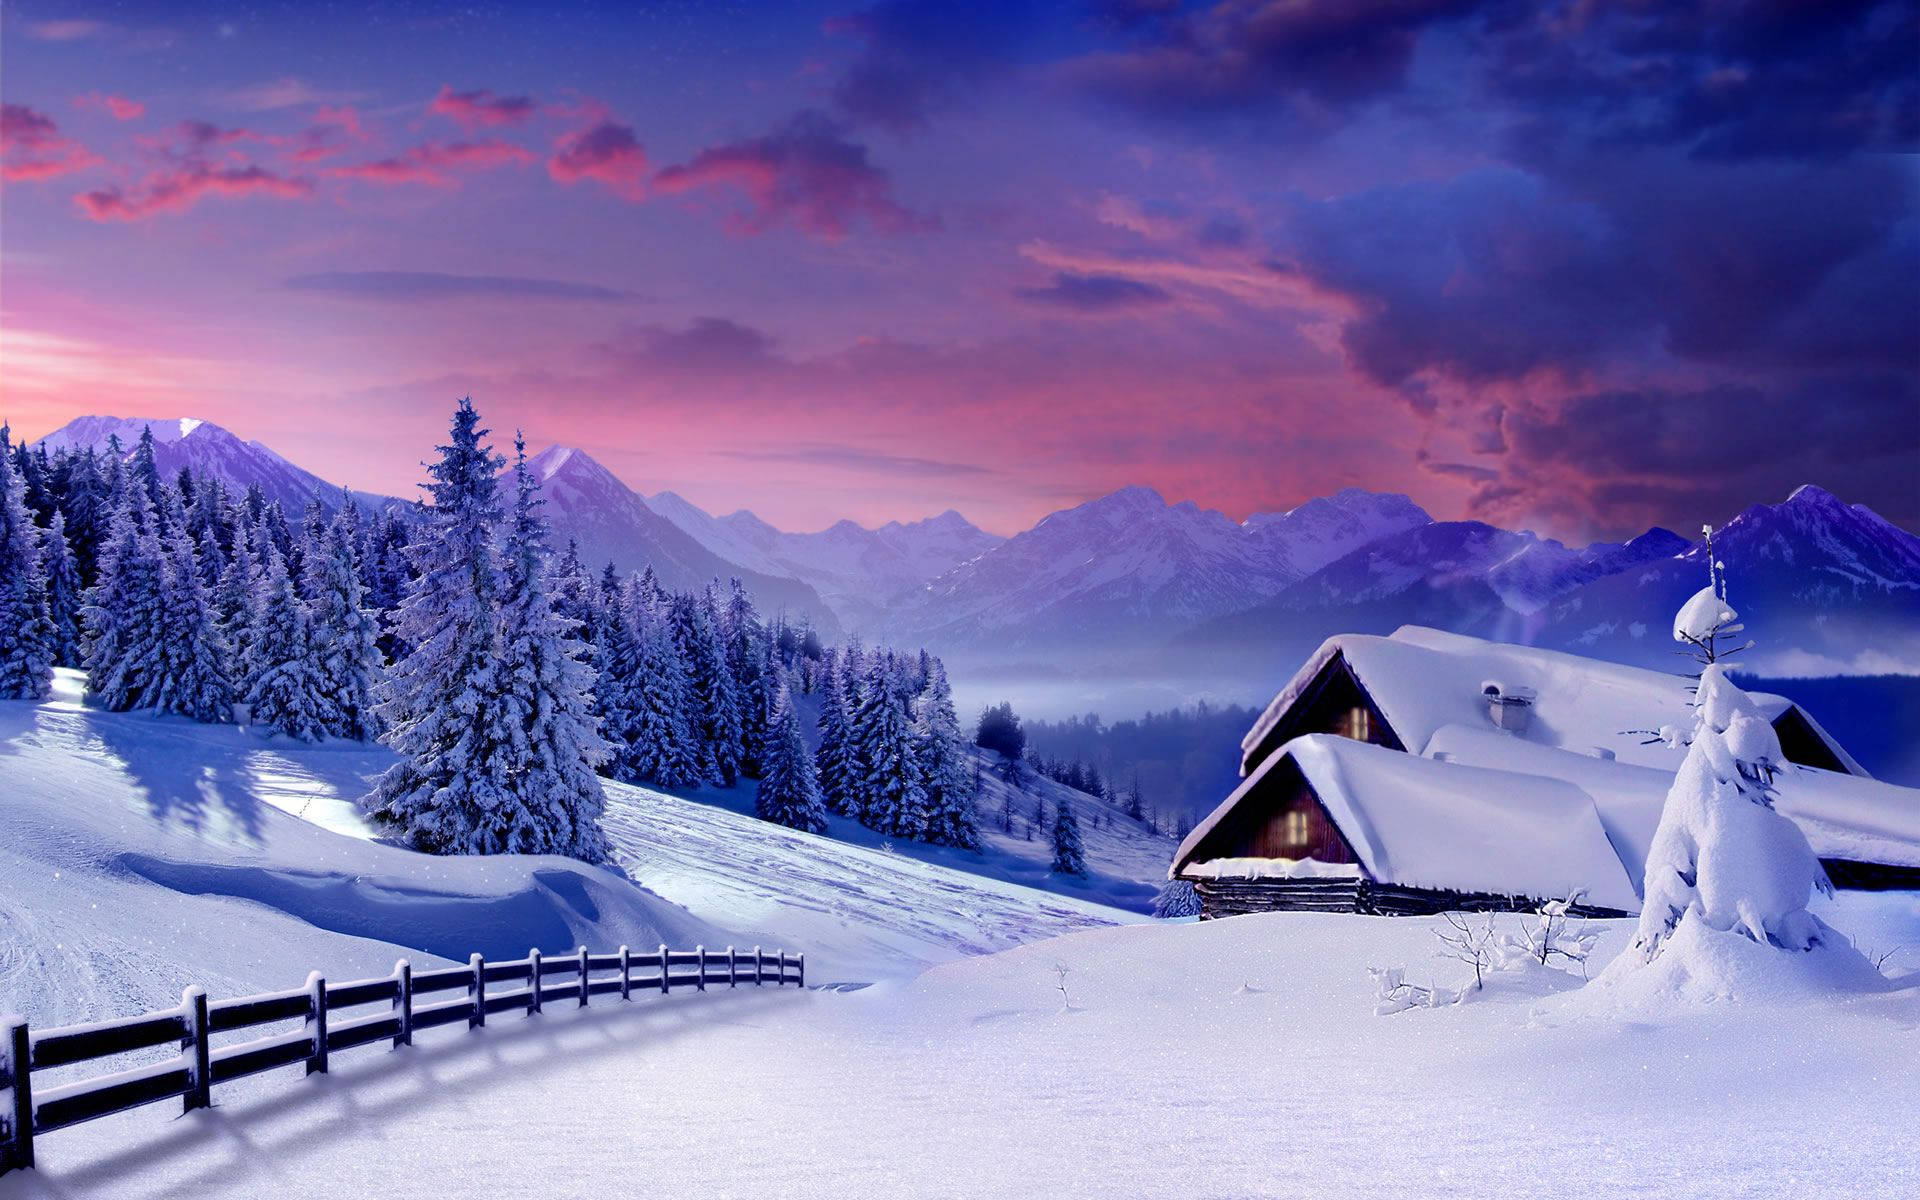 Snowy Cabin In Winter